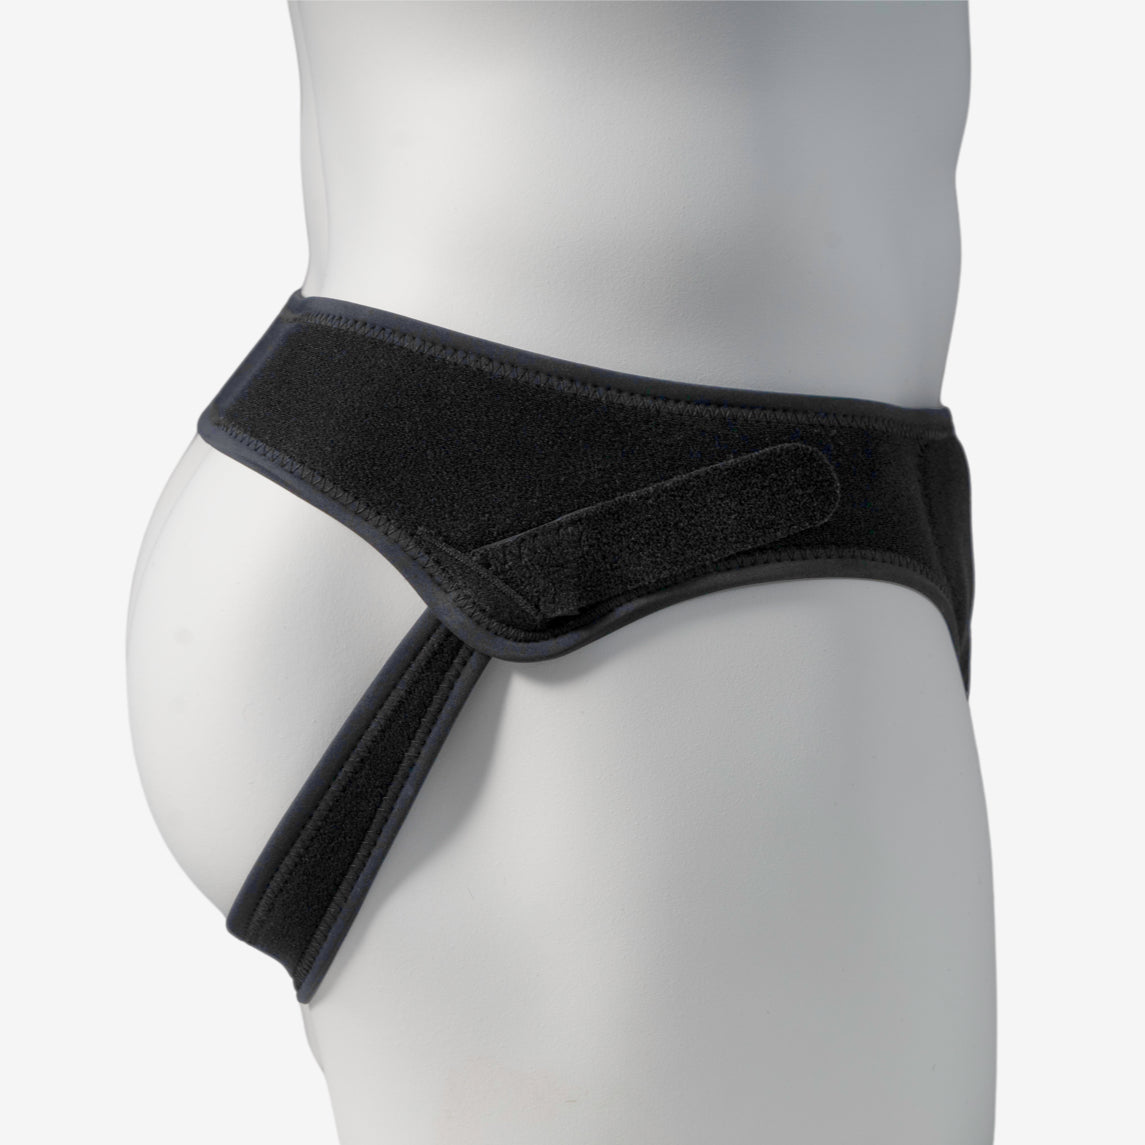 Single Side Hernia Belt  Purchase Single Side Hernia Support Belts Online  - Comfort-Truss